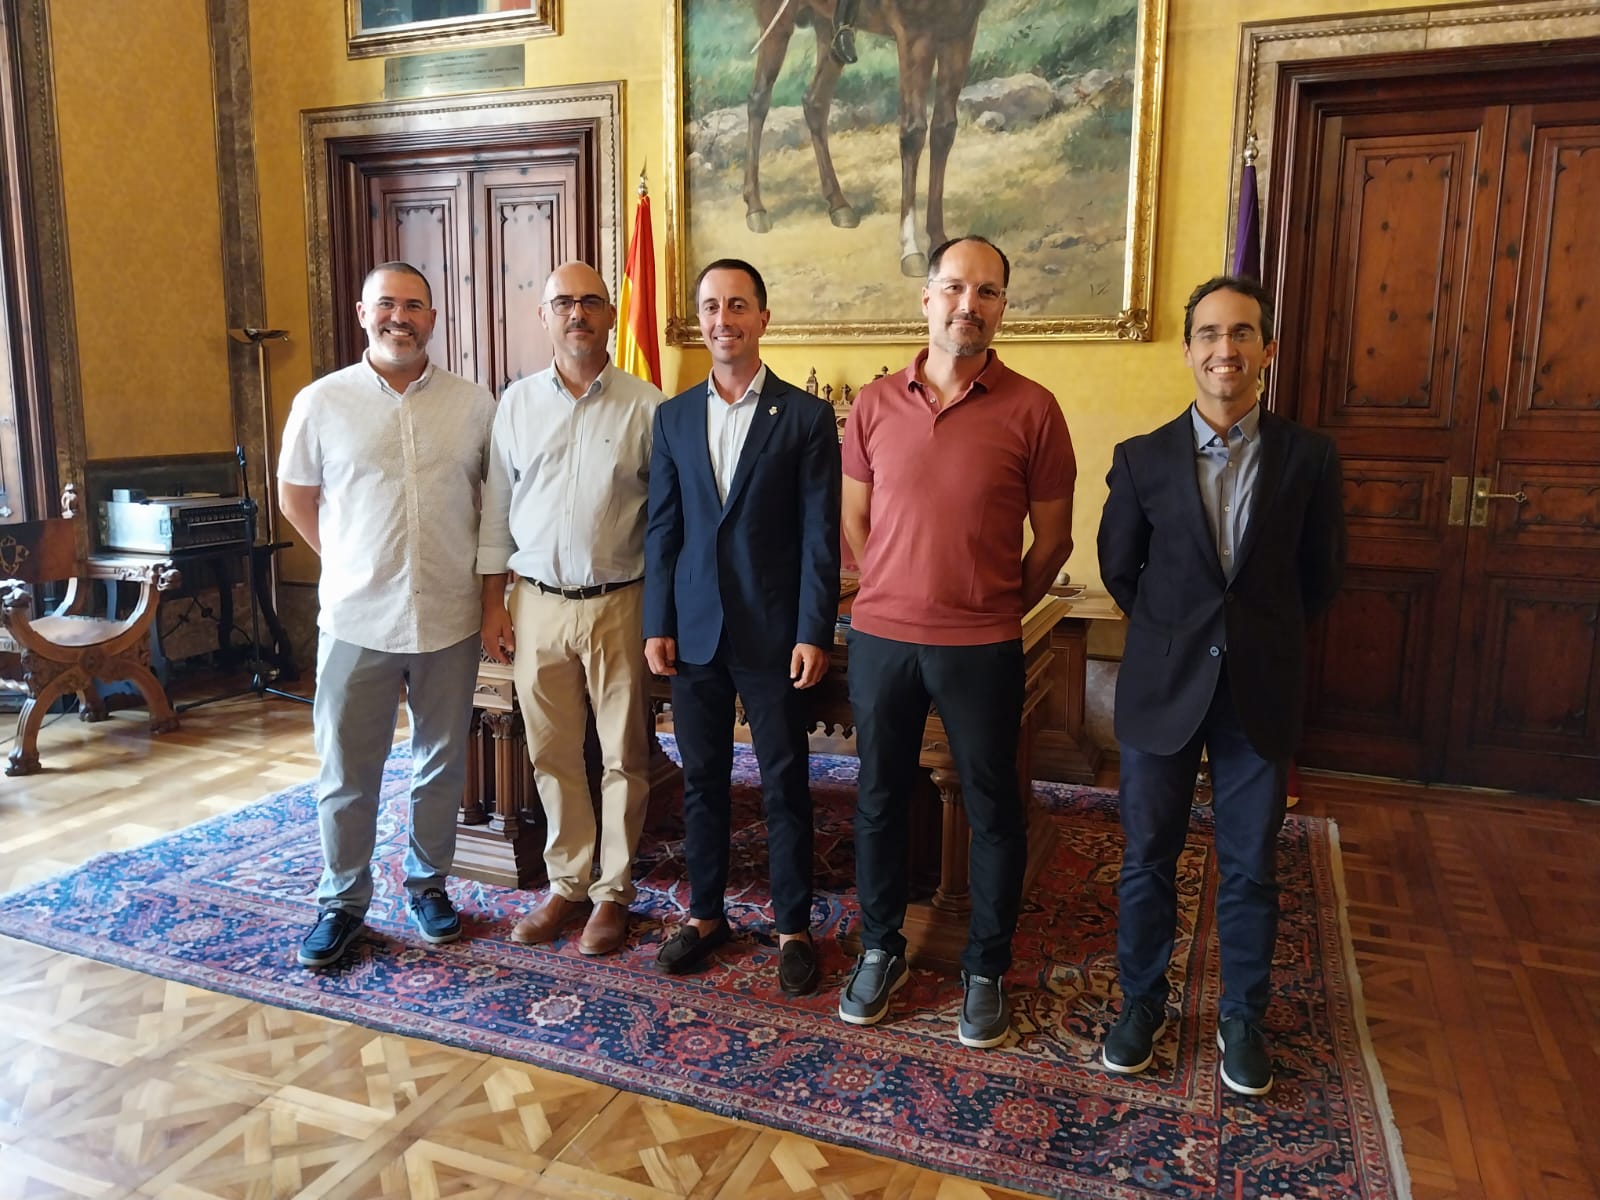 Audiencia del presidente del Consell de Mallorca, Llorenç Galmés, con el consejero de Bienestar Social, Guillermo Sánchez, y los representantes de EAPN-Illes Balears